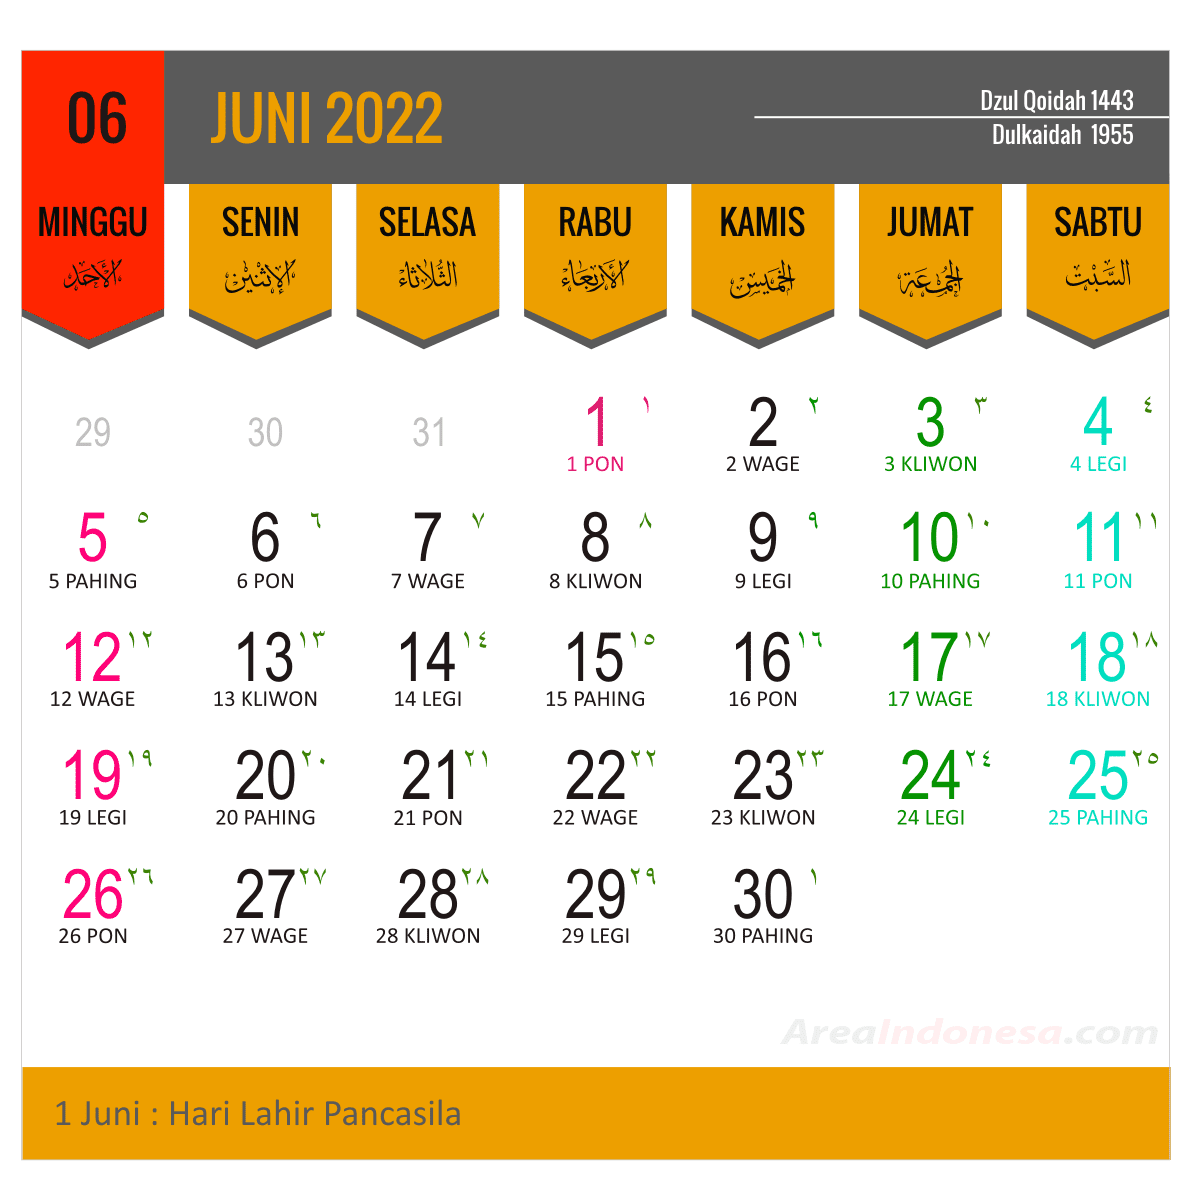 Kalender Juni 2022 Lengkap Dengan Tanggal Merah Dan Keterangannya